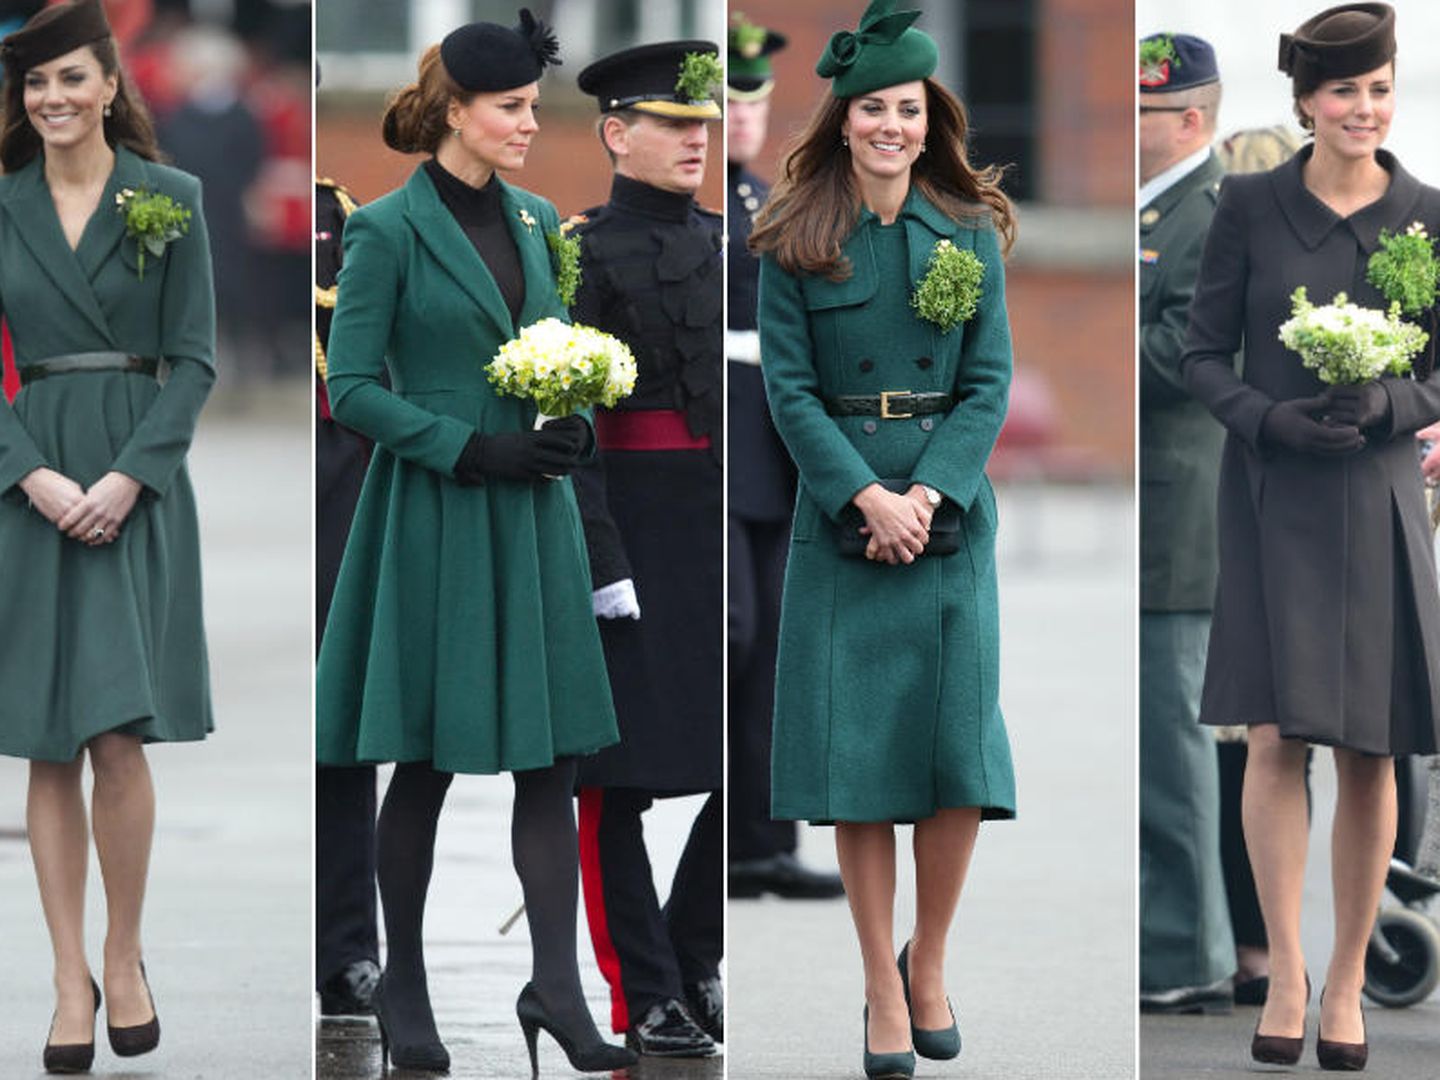 La duquesa presidiendo el día de St. Patrick desde 2012